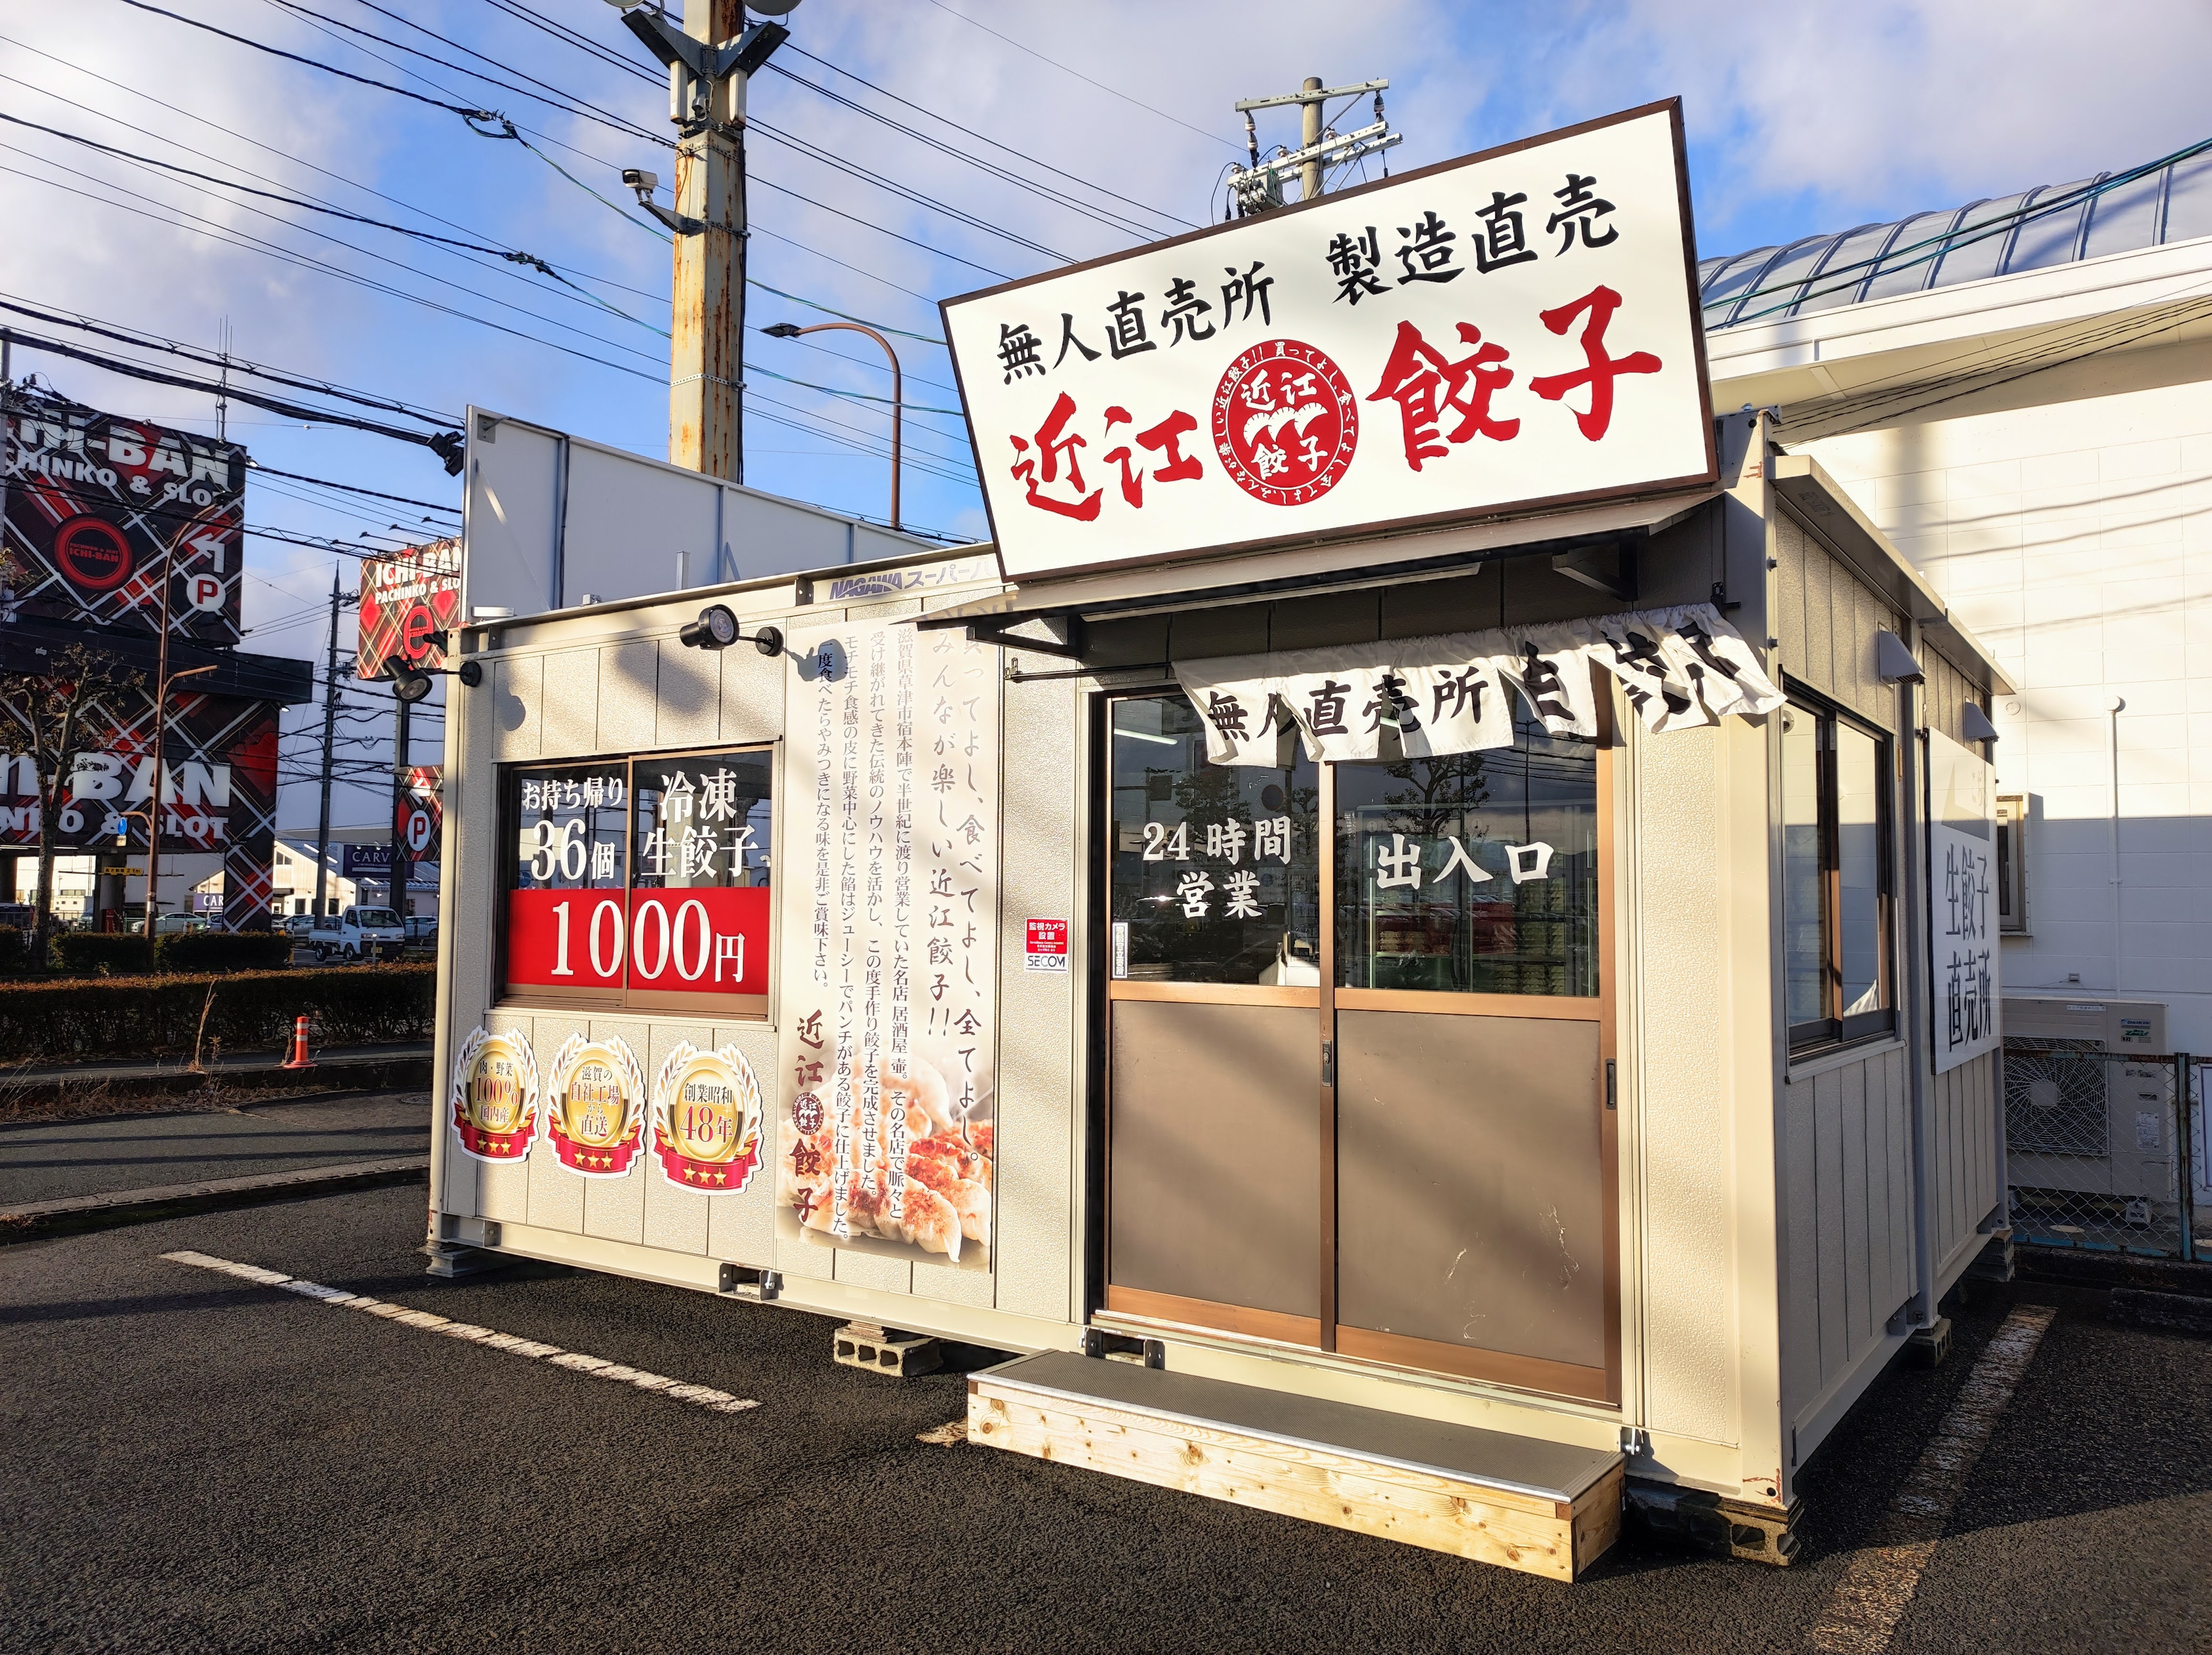 草津市に餃子専門店「近江餃子 草津JJタウン店」がオープンしています！年中無休24時間営業の無人販売所と店舗外に自動販売機あり！